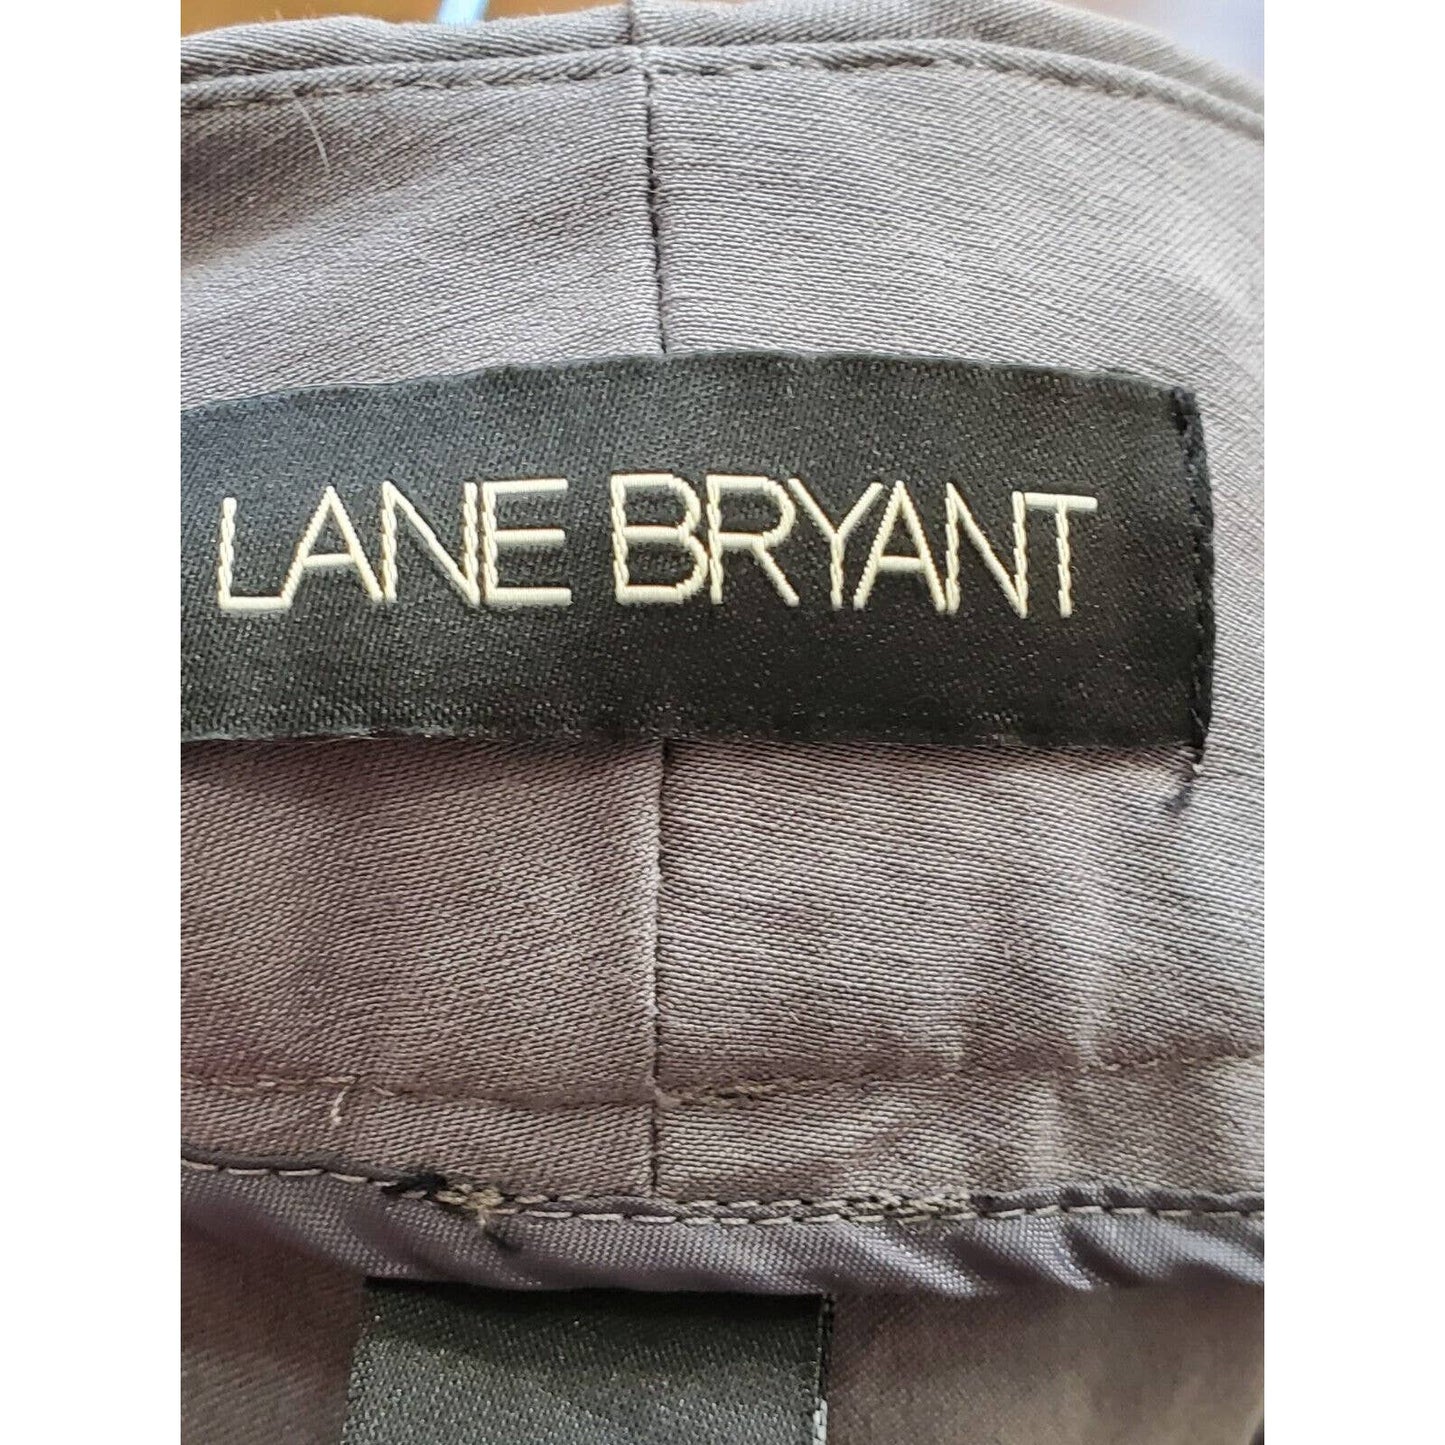 Lane Bryant Women's Gray Rayon Plus Size Zippered Capri Pant Size 28